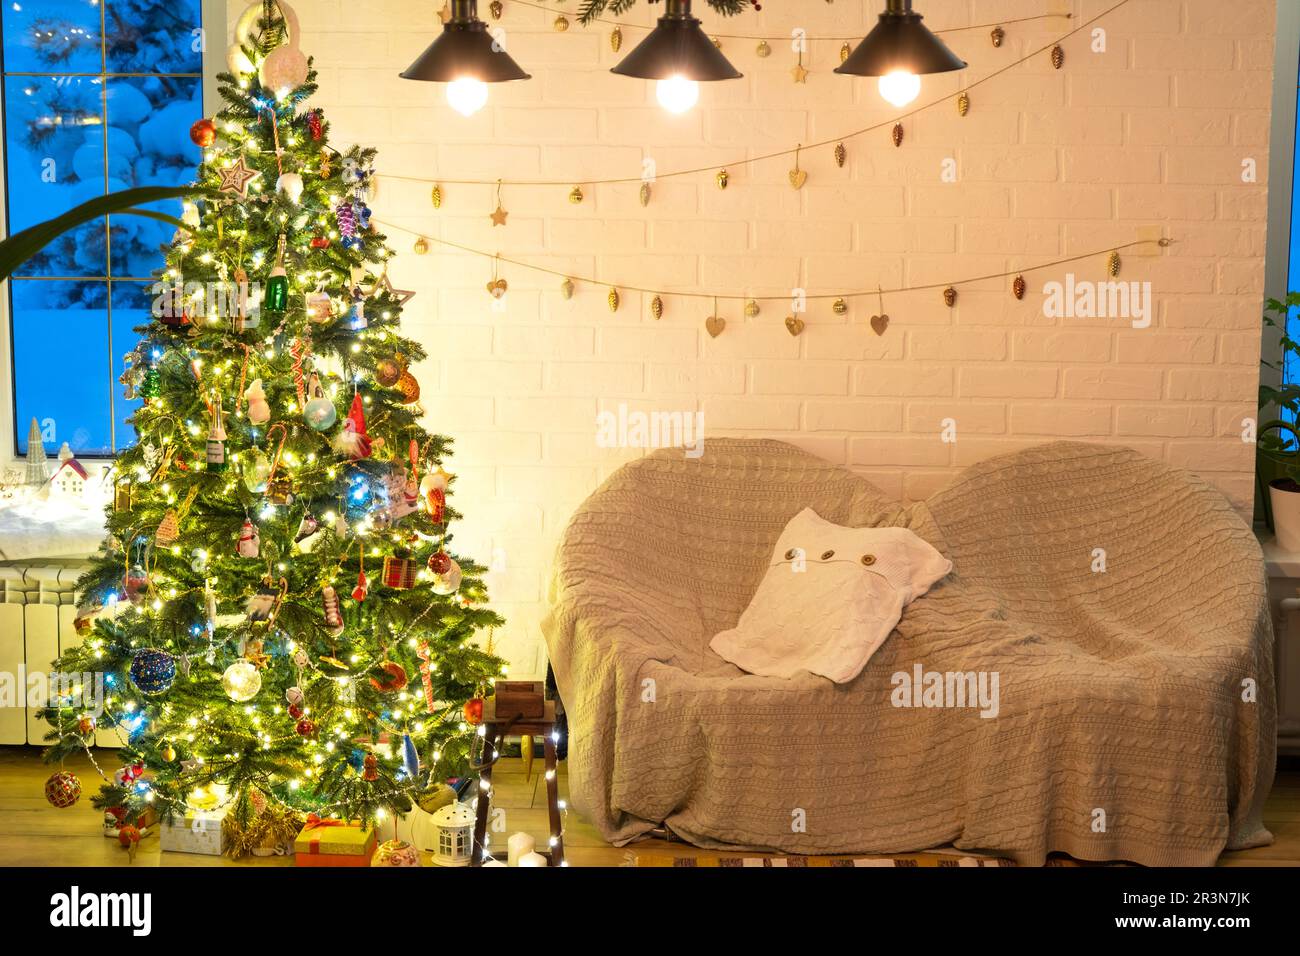 Arbre de Noël dans l'intérieur blanc d'une maison avec des murs de briques de style loft avec guirlande de jouets en verre sur une corde. Lig de fées lumineux Banque D'Images